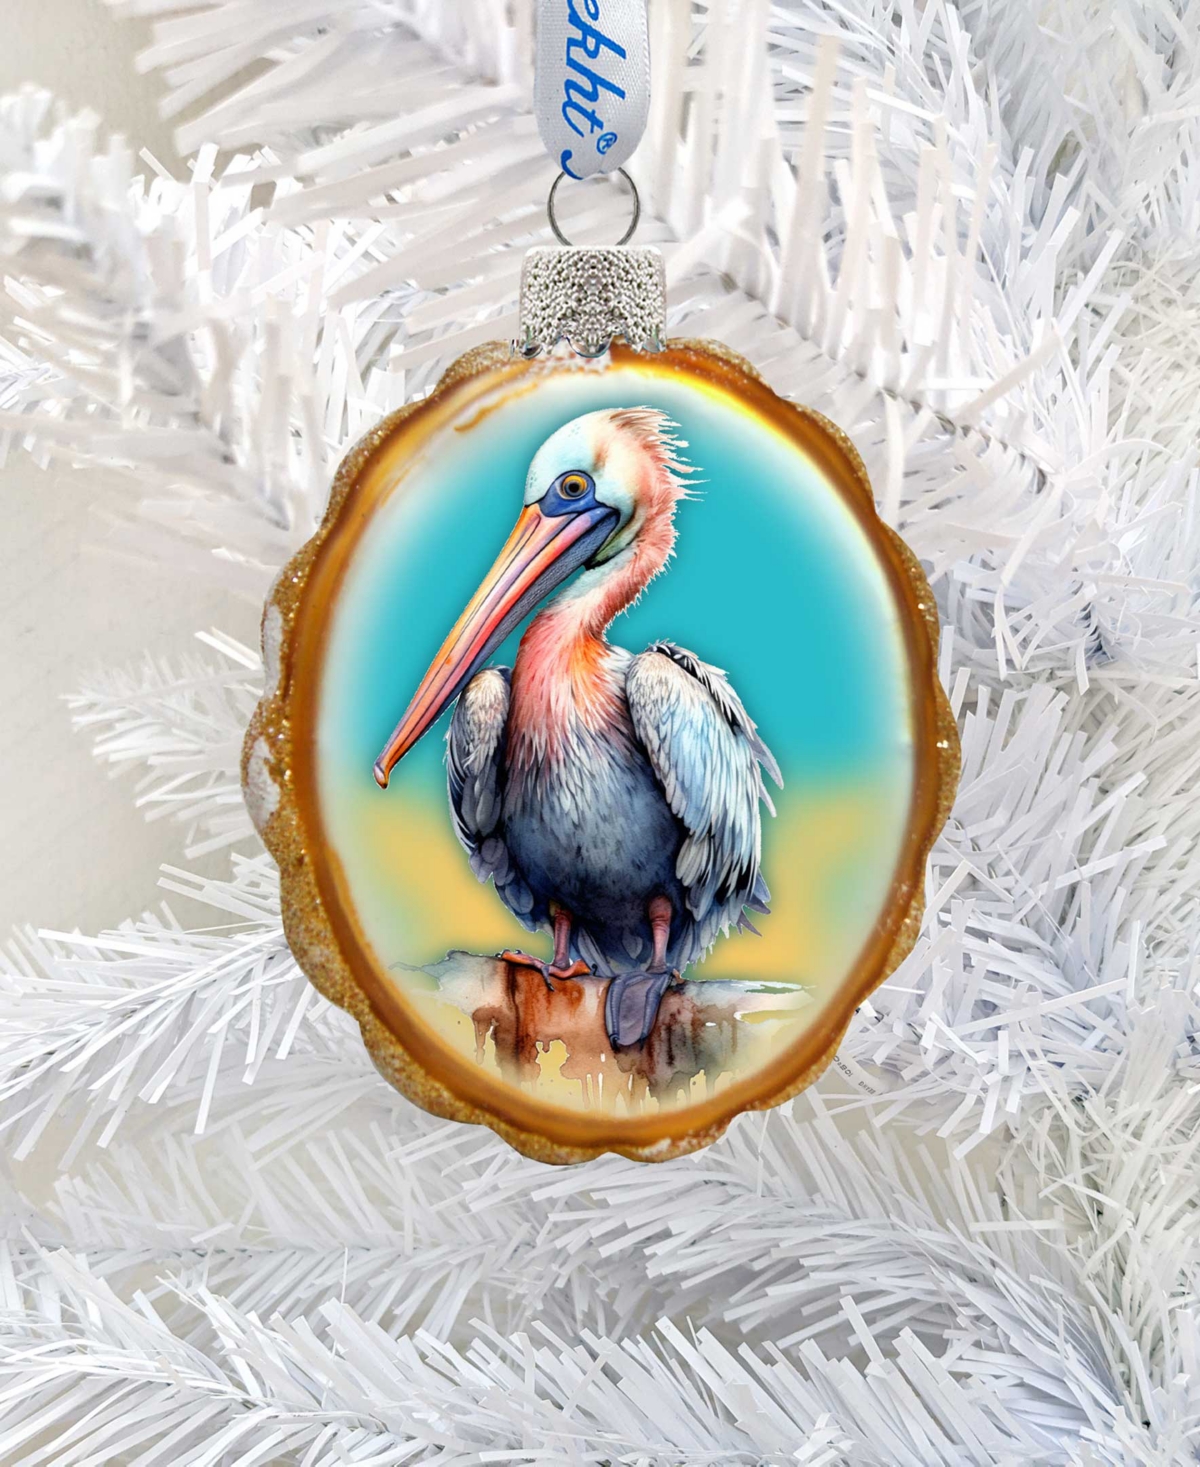 Designocracy Pelican Keepsake Holiday Mercury Glass Ornaments G. Debrekht In Multi Color